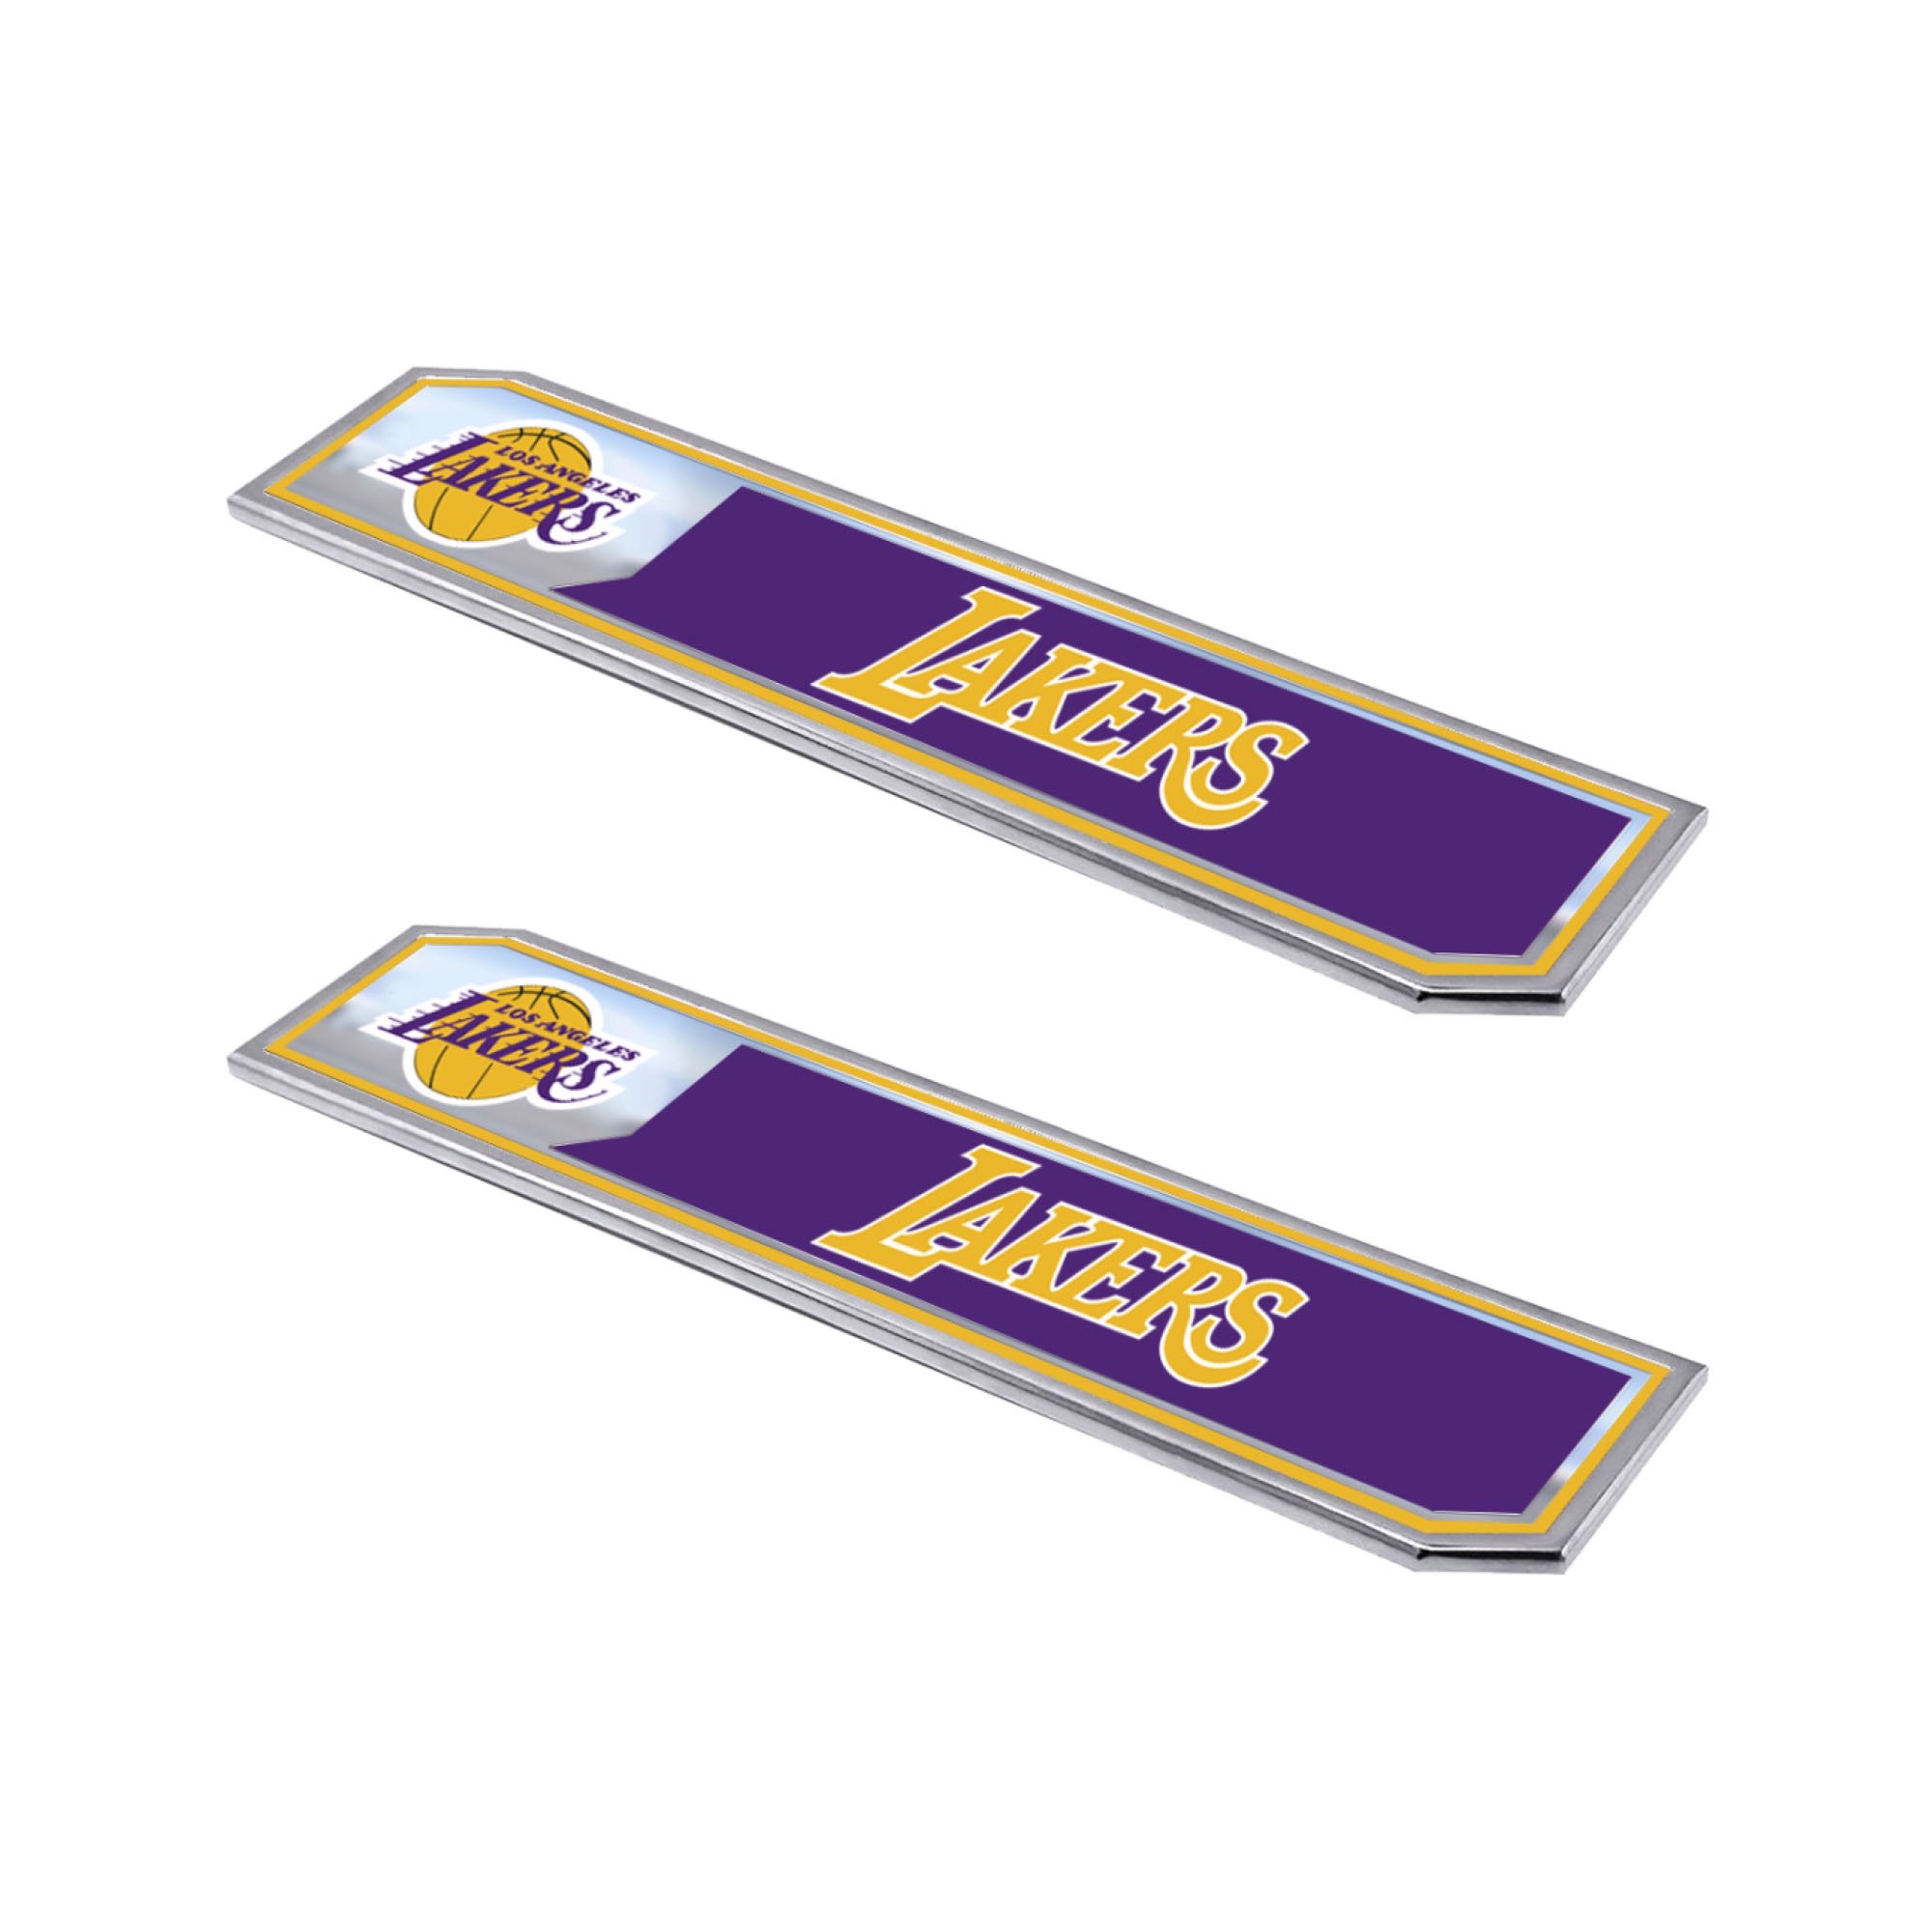 Have a question about FANMATS NBA Los Angeles Lakers Color Emblem